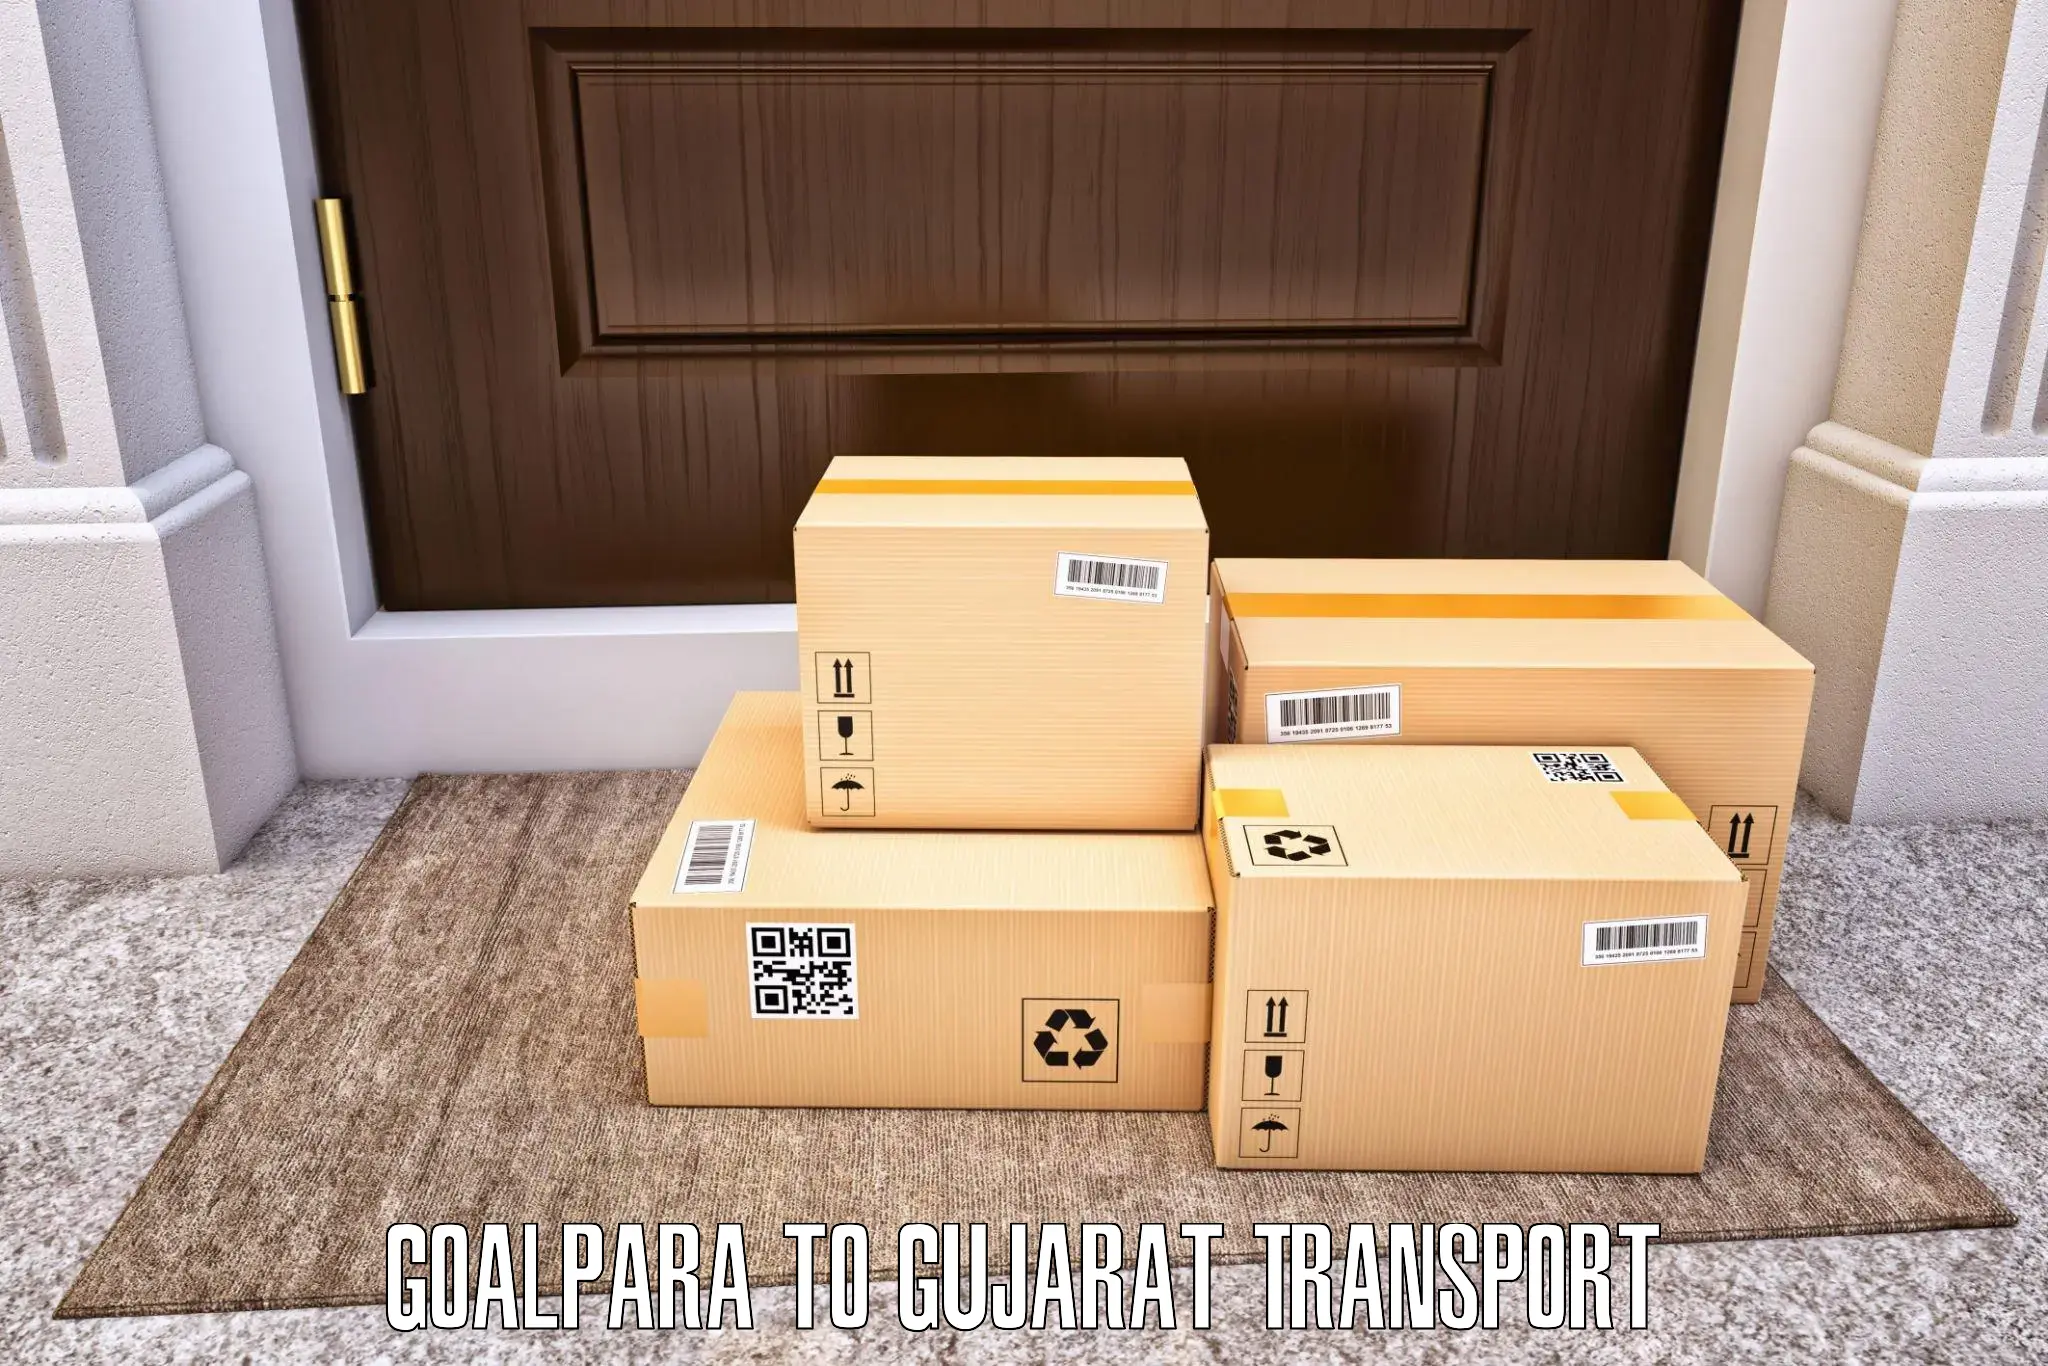 Cargo train transport services in Goalpara to Nakhatrana